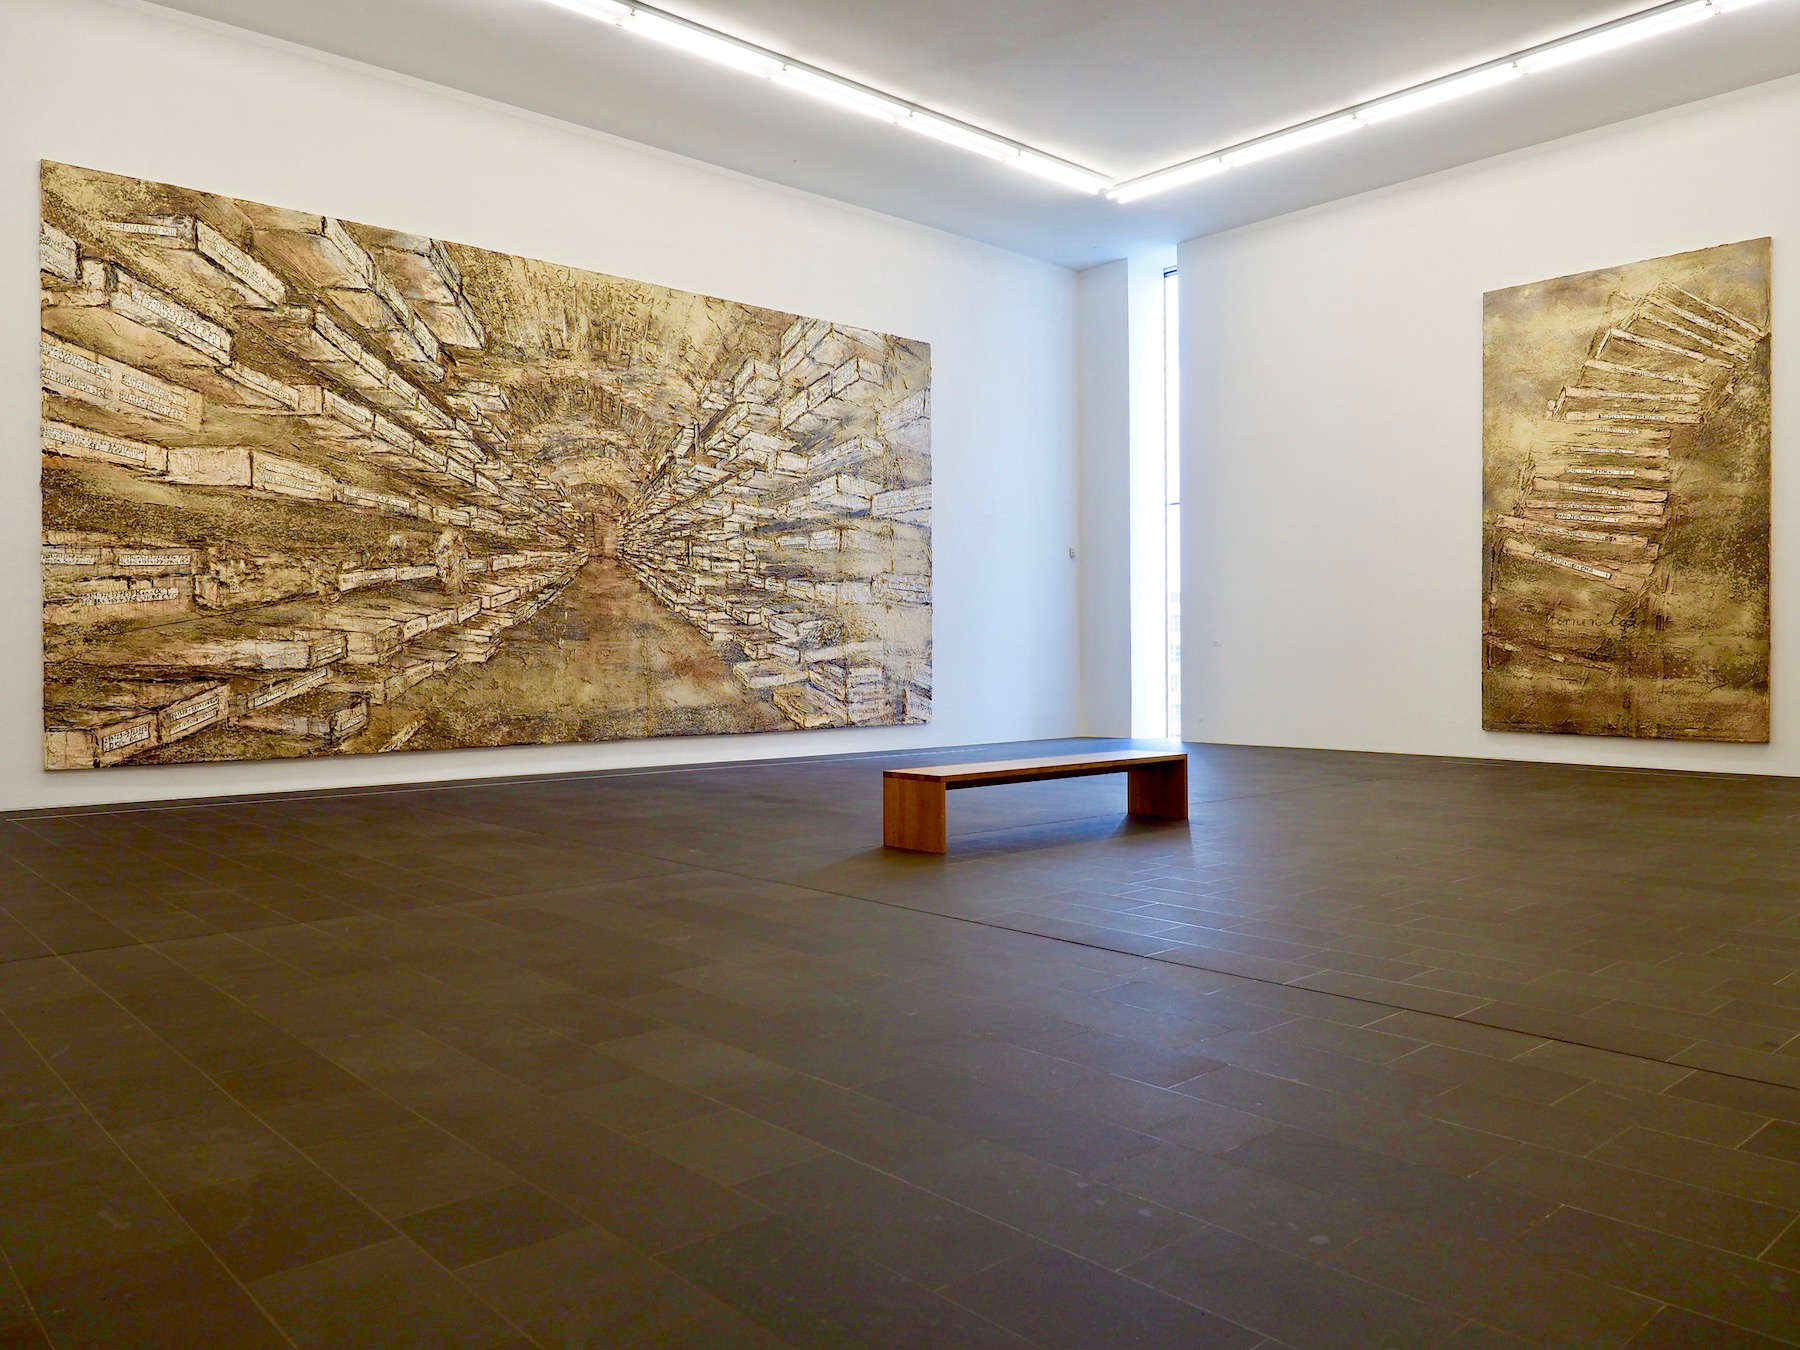 Bei Deckenhöhen von sechs Metern lassen sich auch großformatige Werke wie Anselm Kiefers „Sternen-Lager“ hängen. Wie hier sind alle Fußböden im Museum mit grauem, türkischem Basalt belegt.